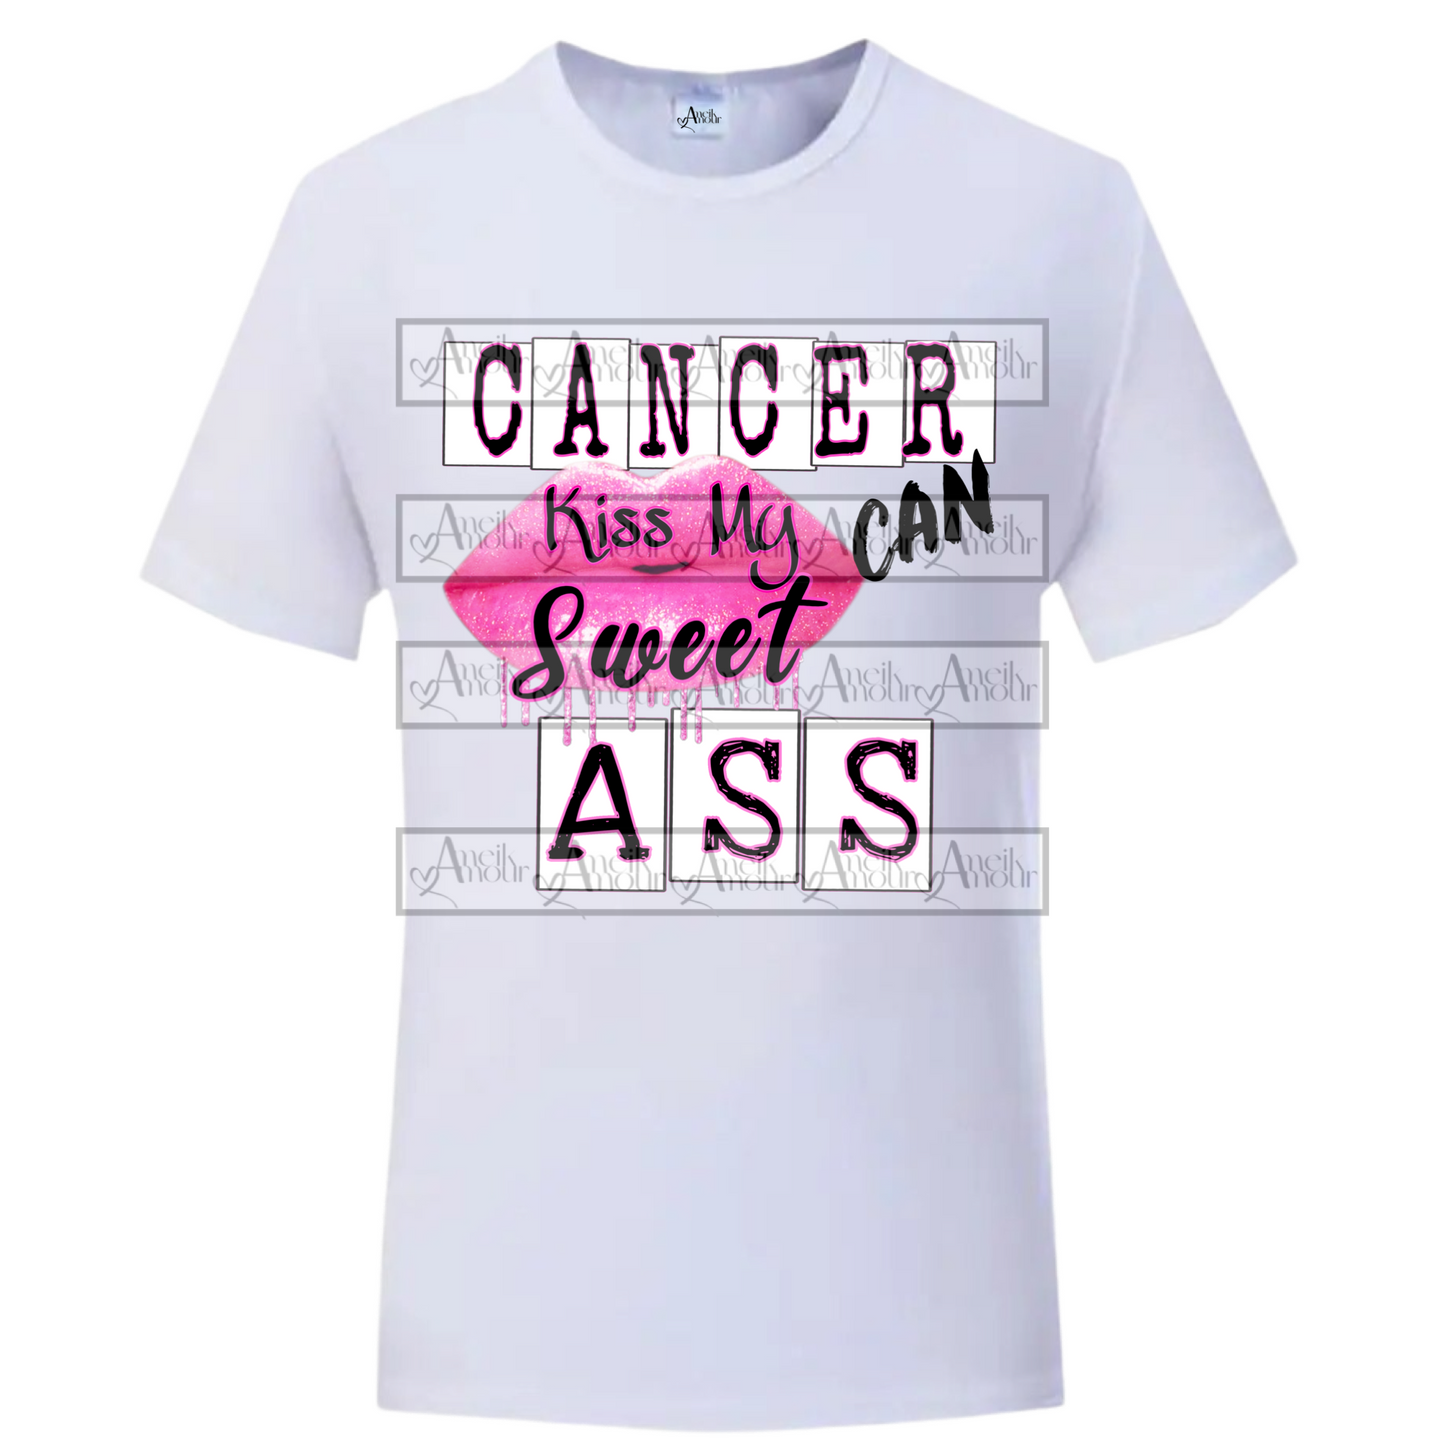 Cancer Kiss Ass T-Shirt